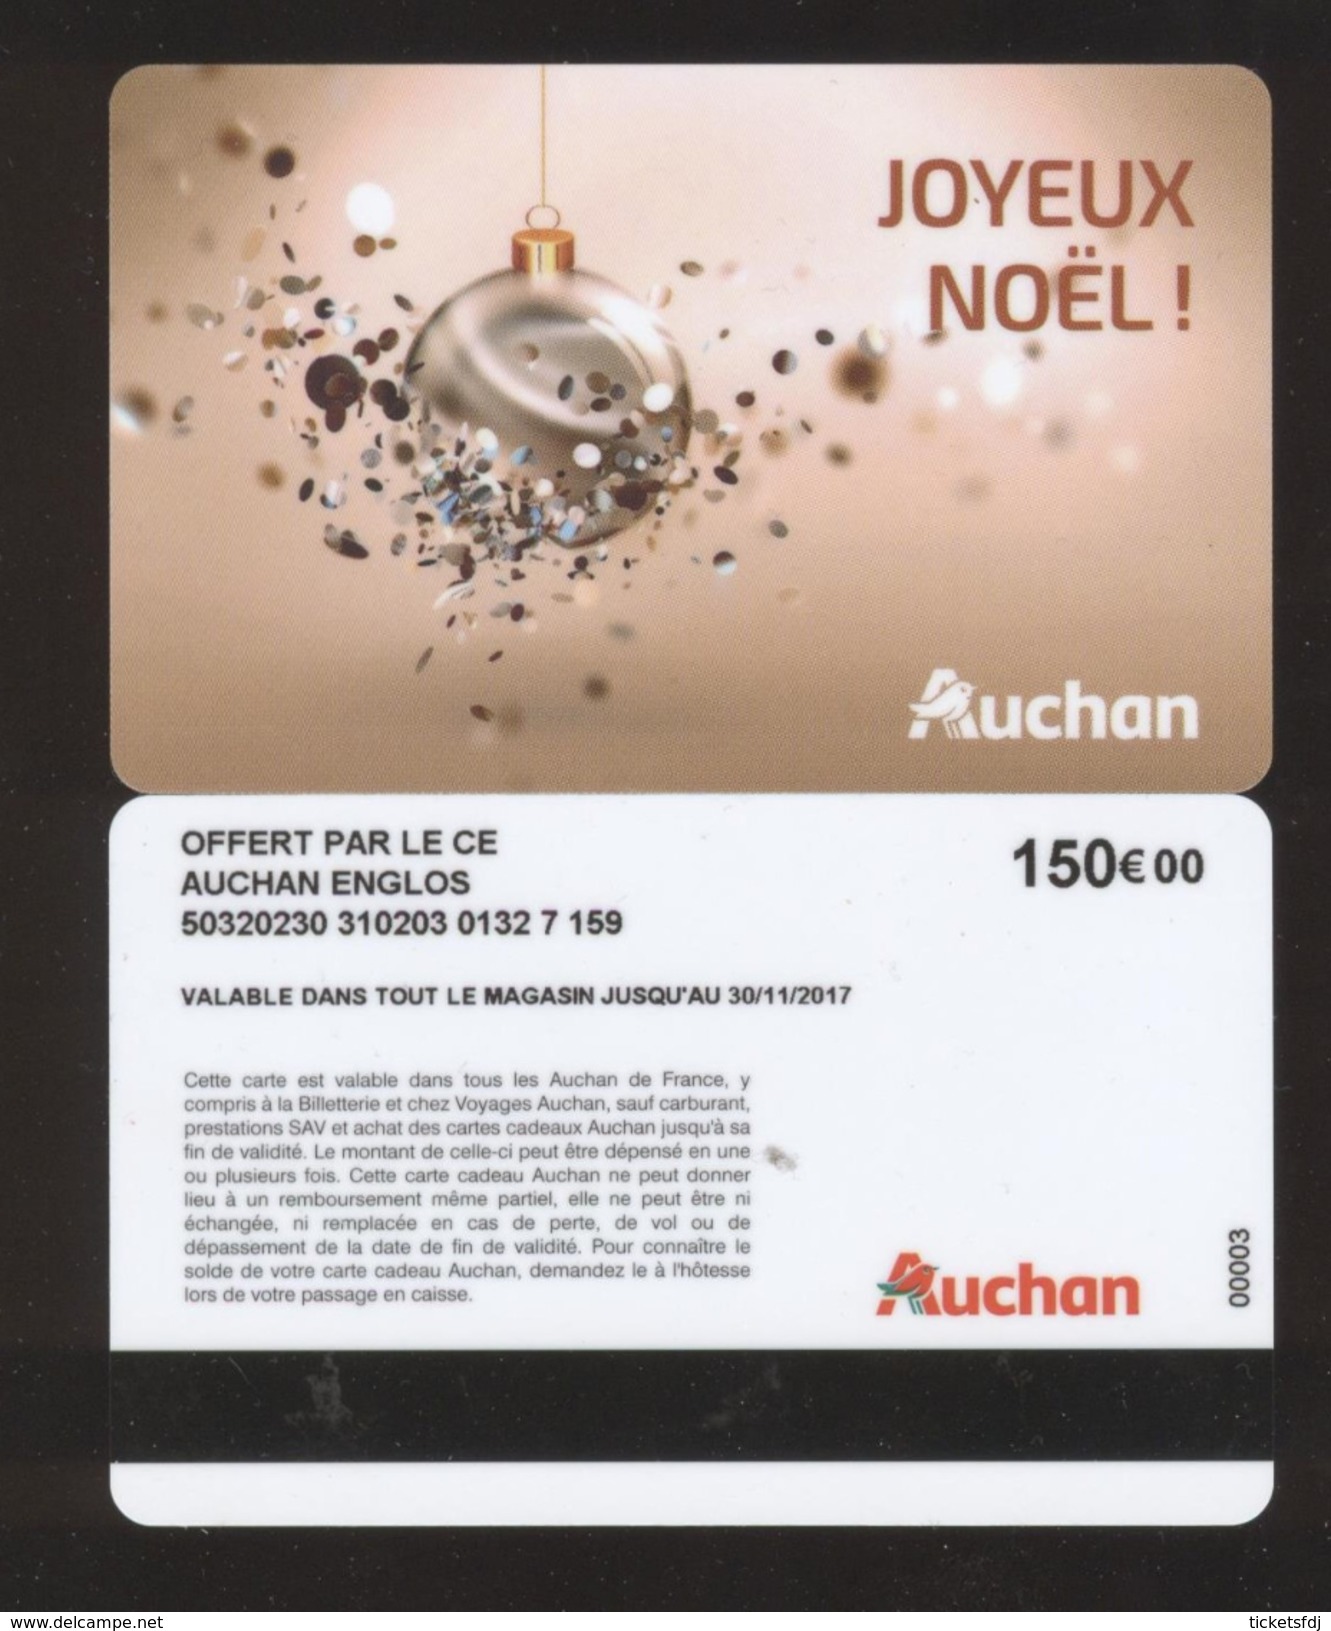 GIFT CARD - Carte Cadeau Auchan - JOYEUX NOEL - 150 &euro; - CE AUCHAN ENGLOS - Cartes Cadeaux